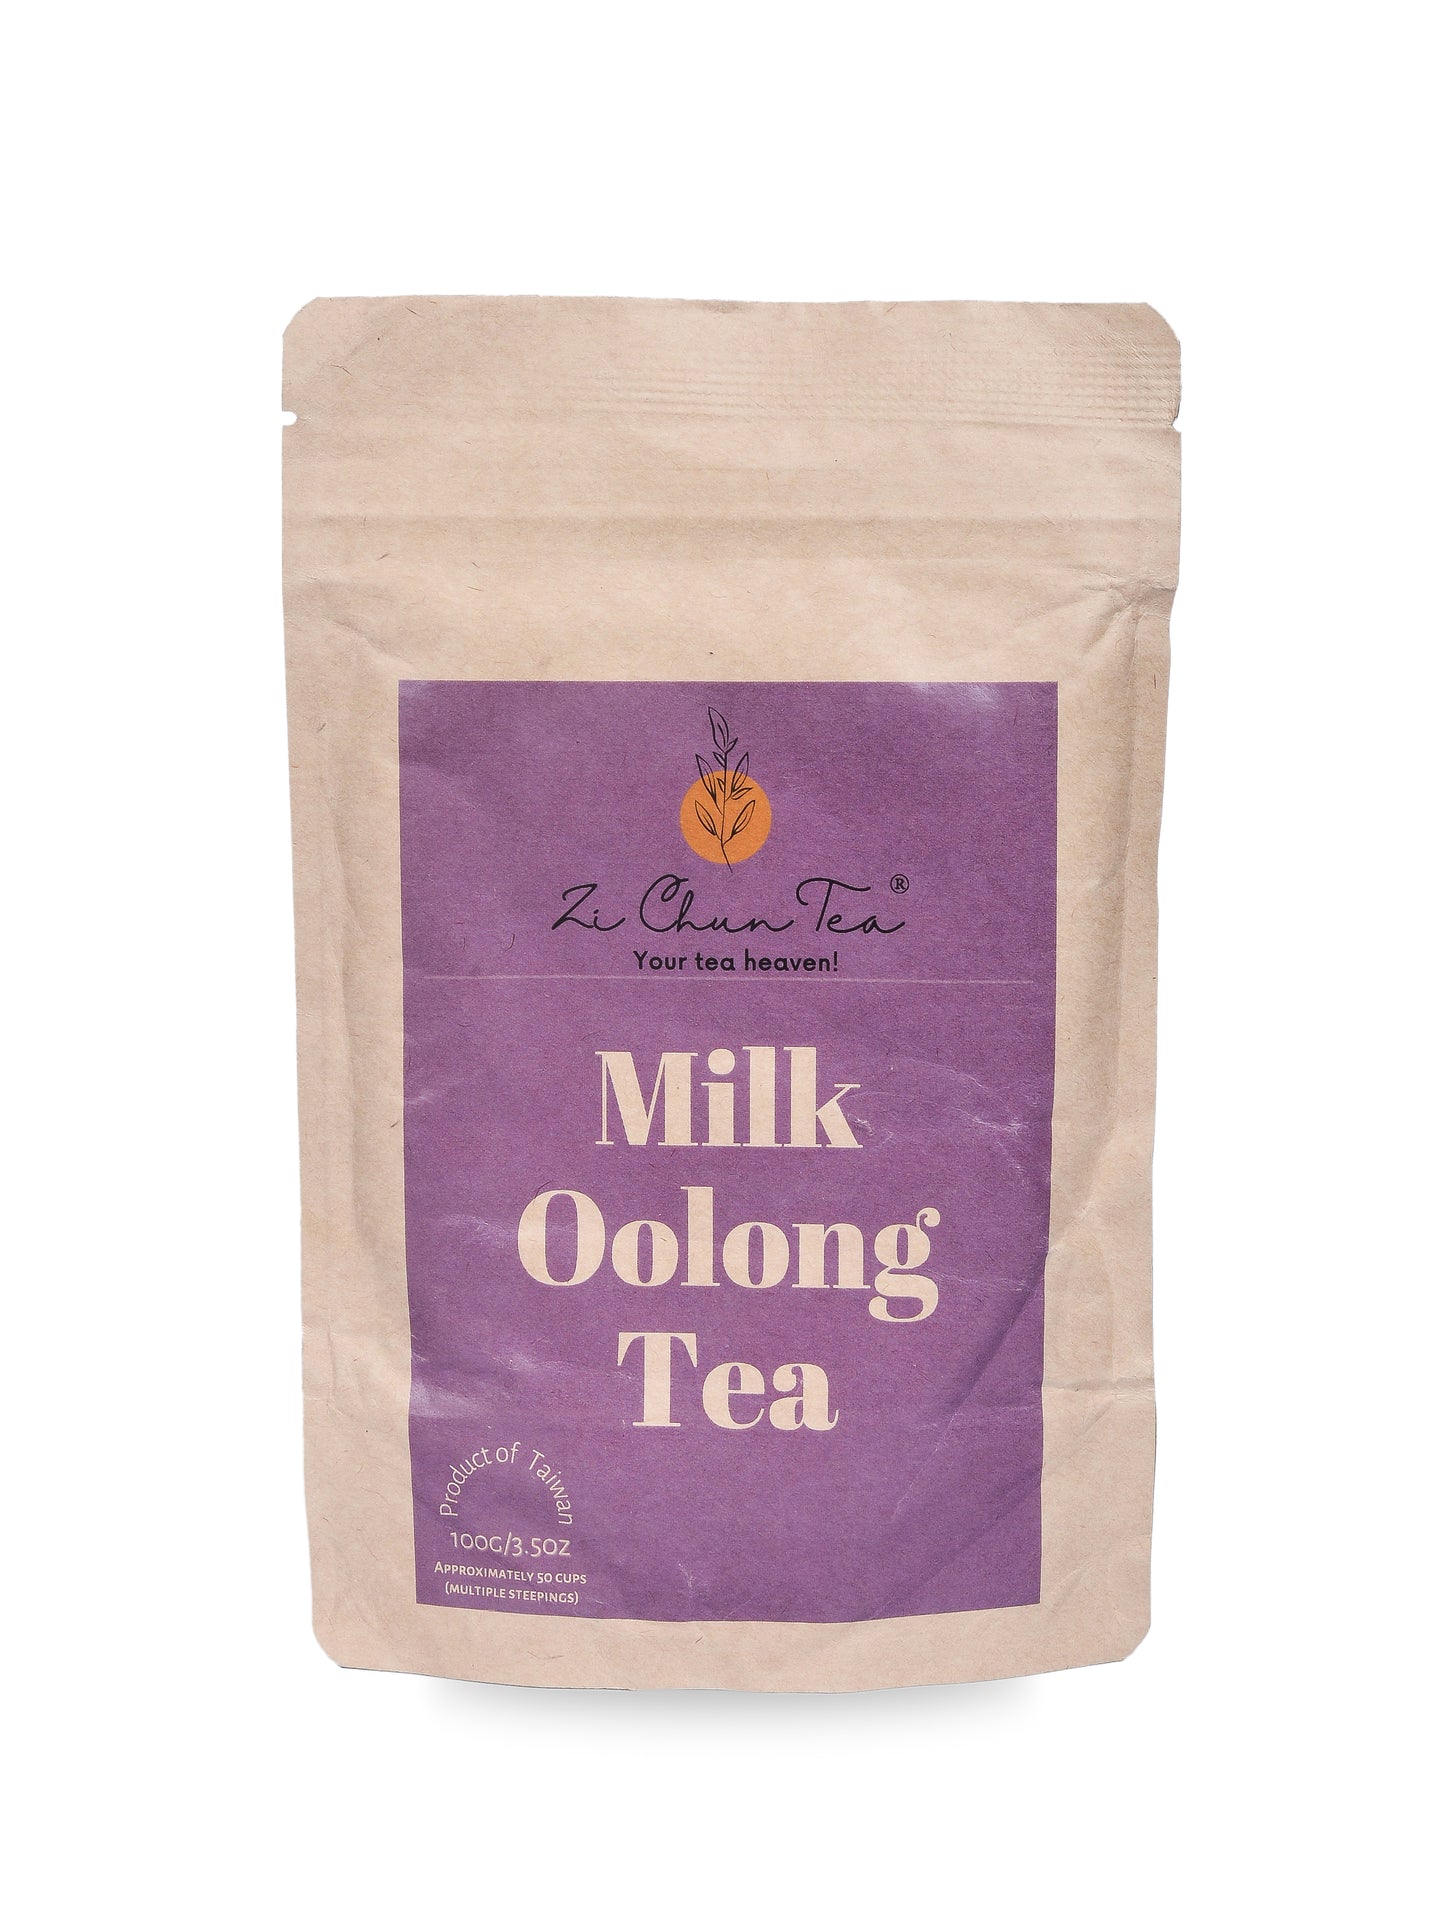 Milk Oolong Tea - a delightful tea experience!